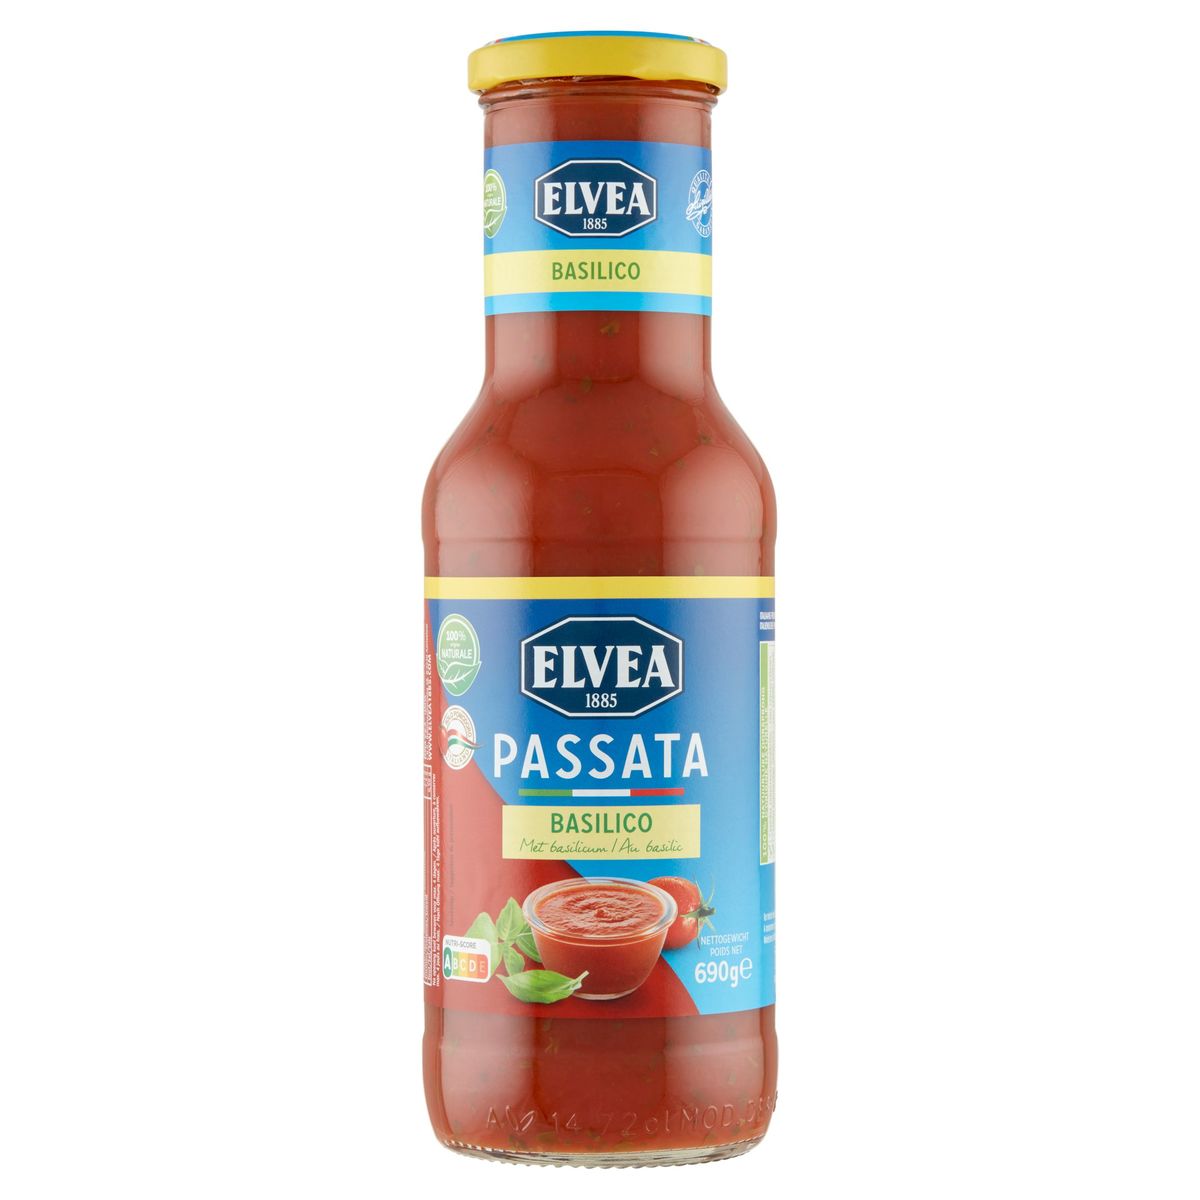 Elvea Passata met Basilicum 690 g